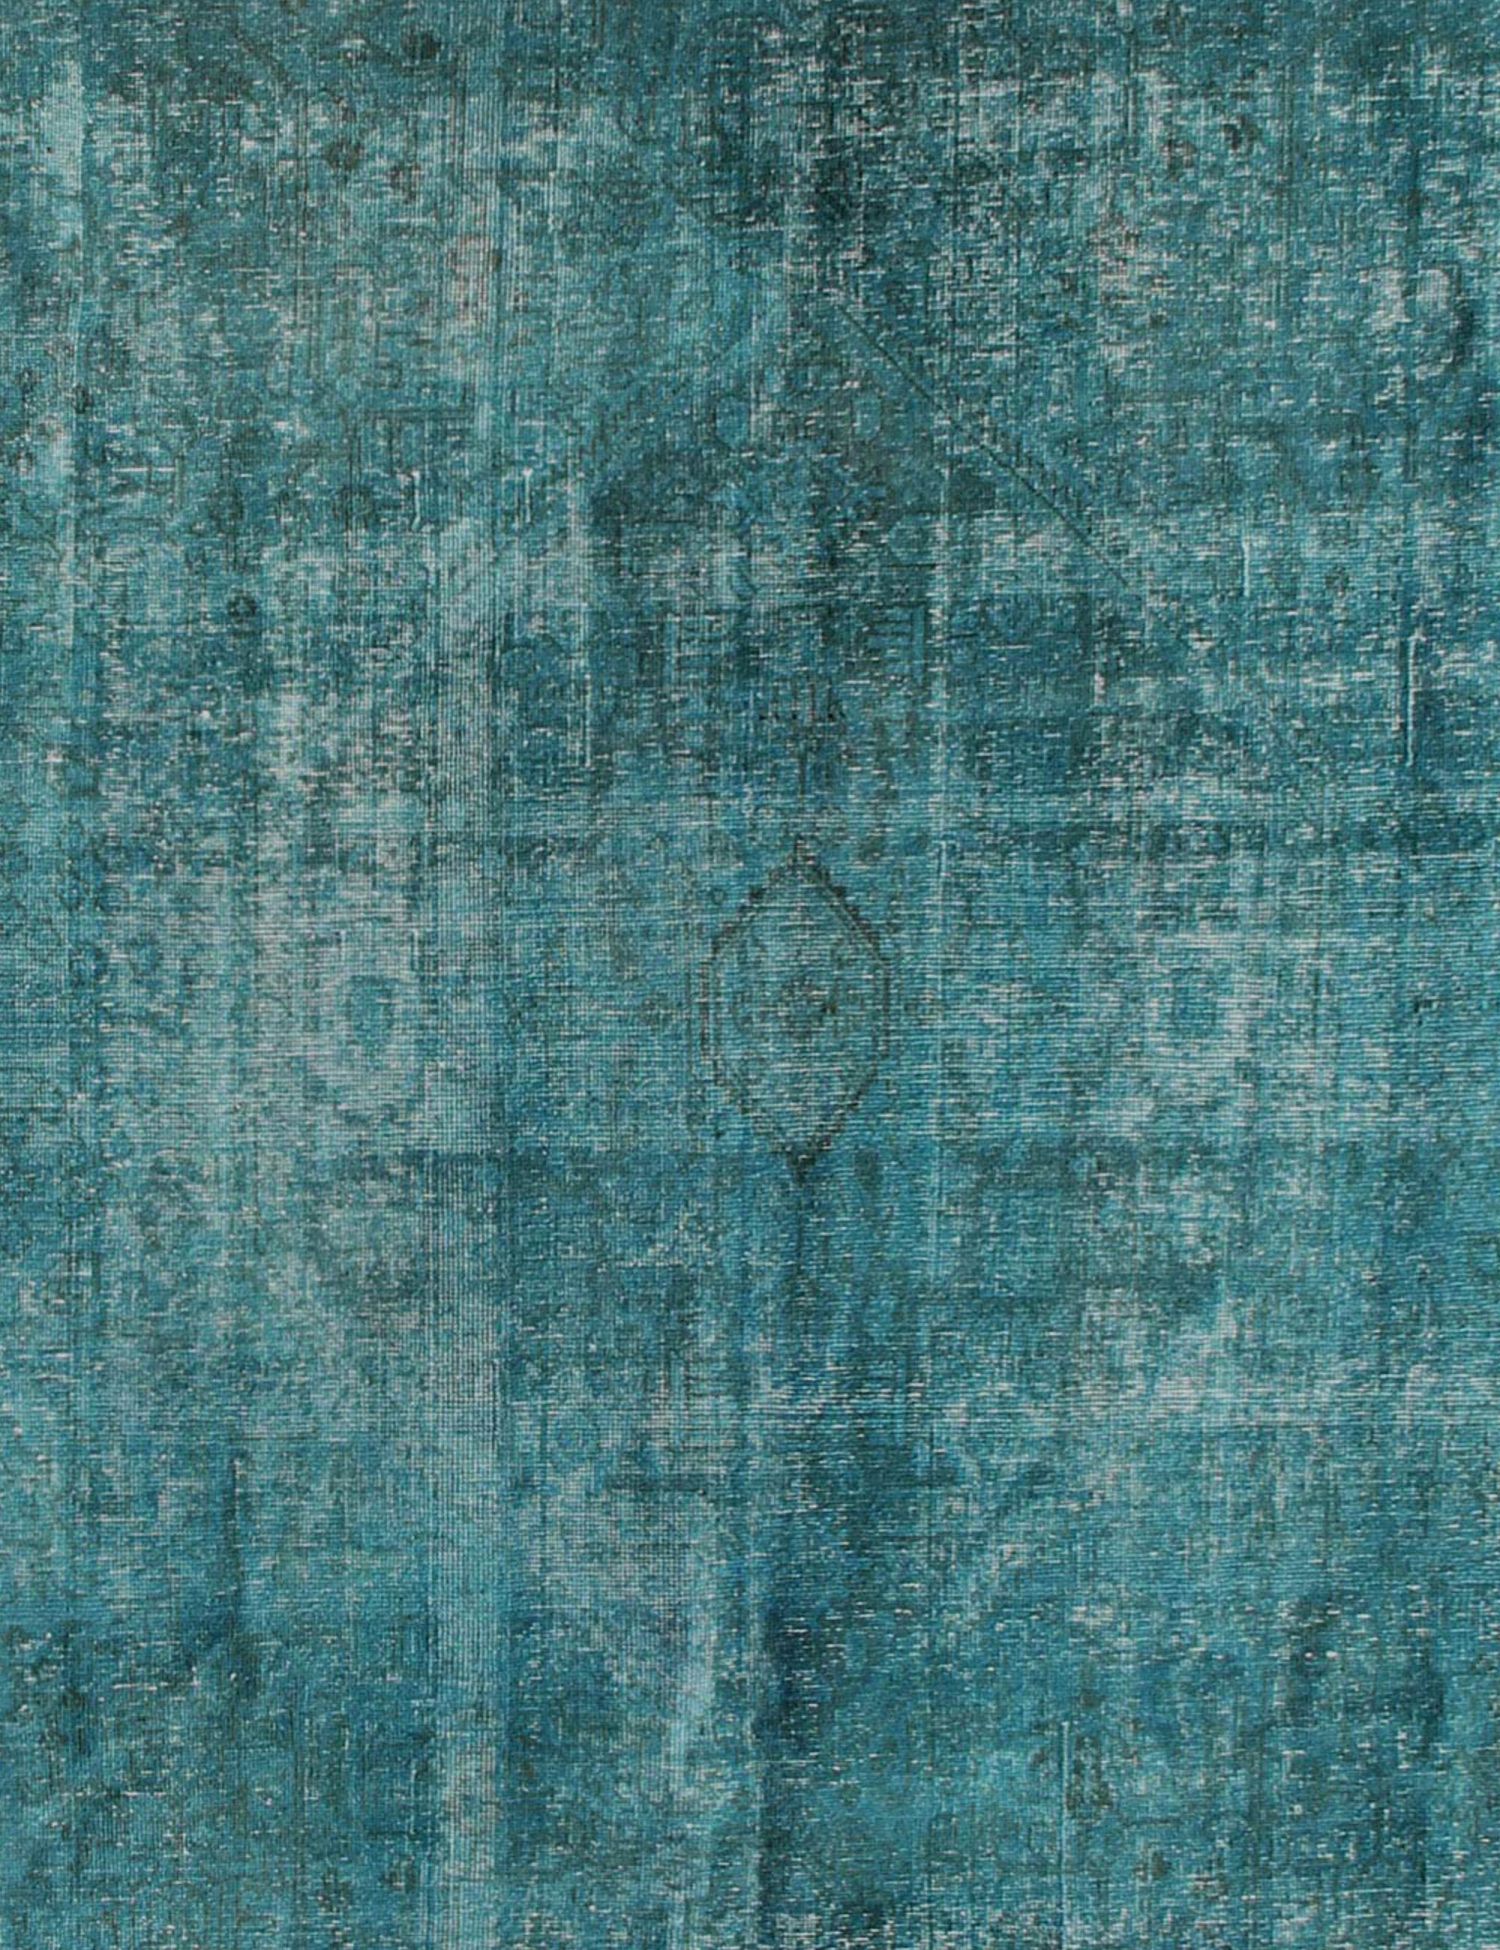 Persischer Vintage Teppich  türkis <br/>290 x 290 cm